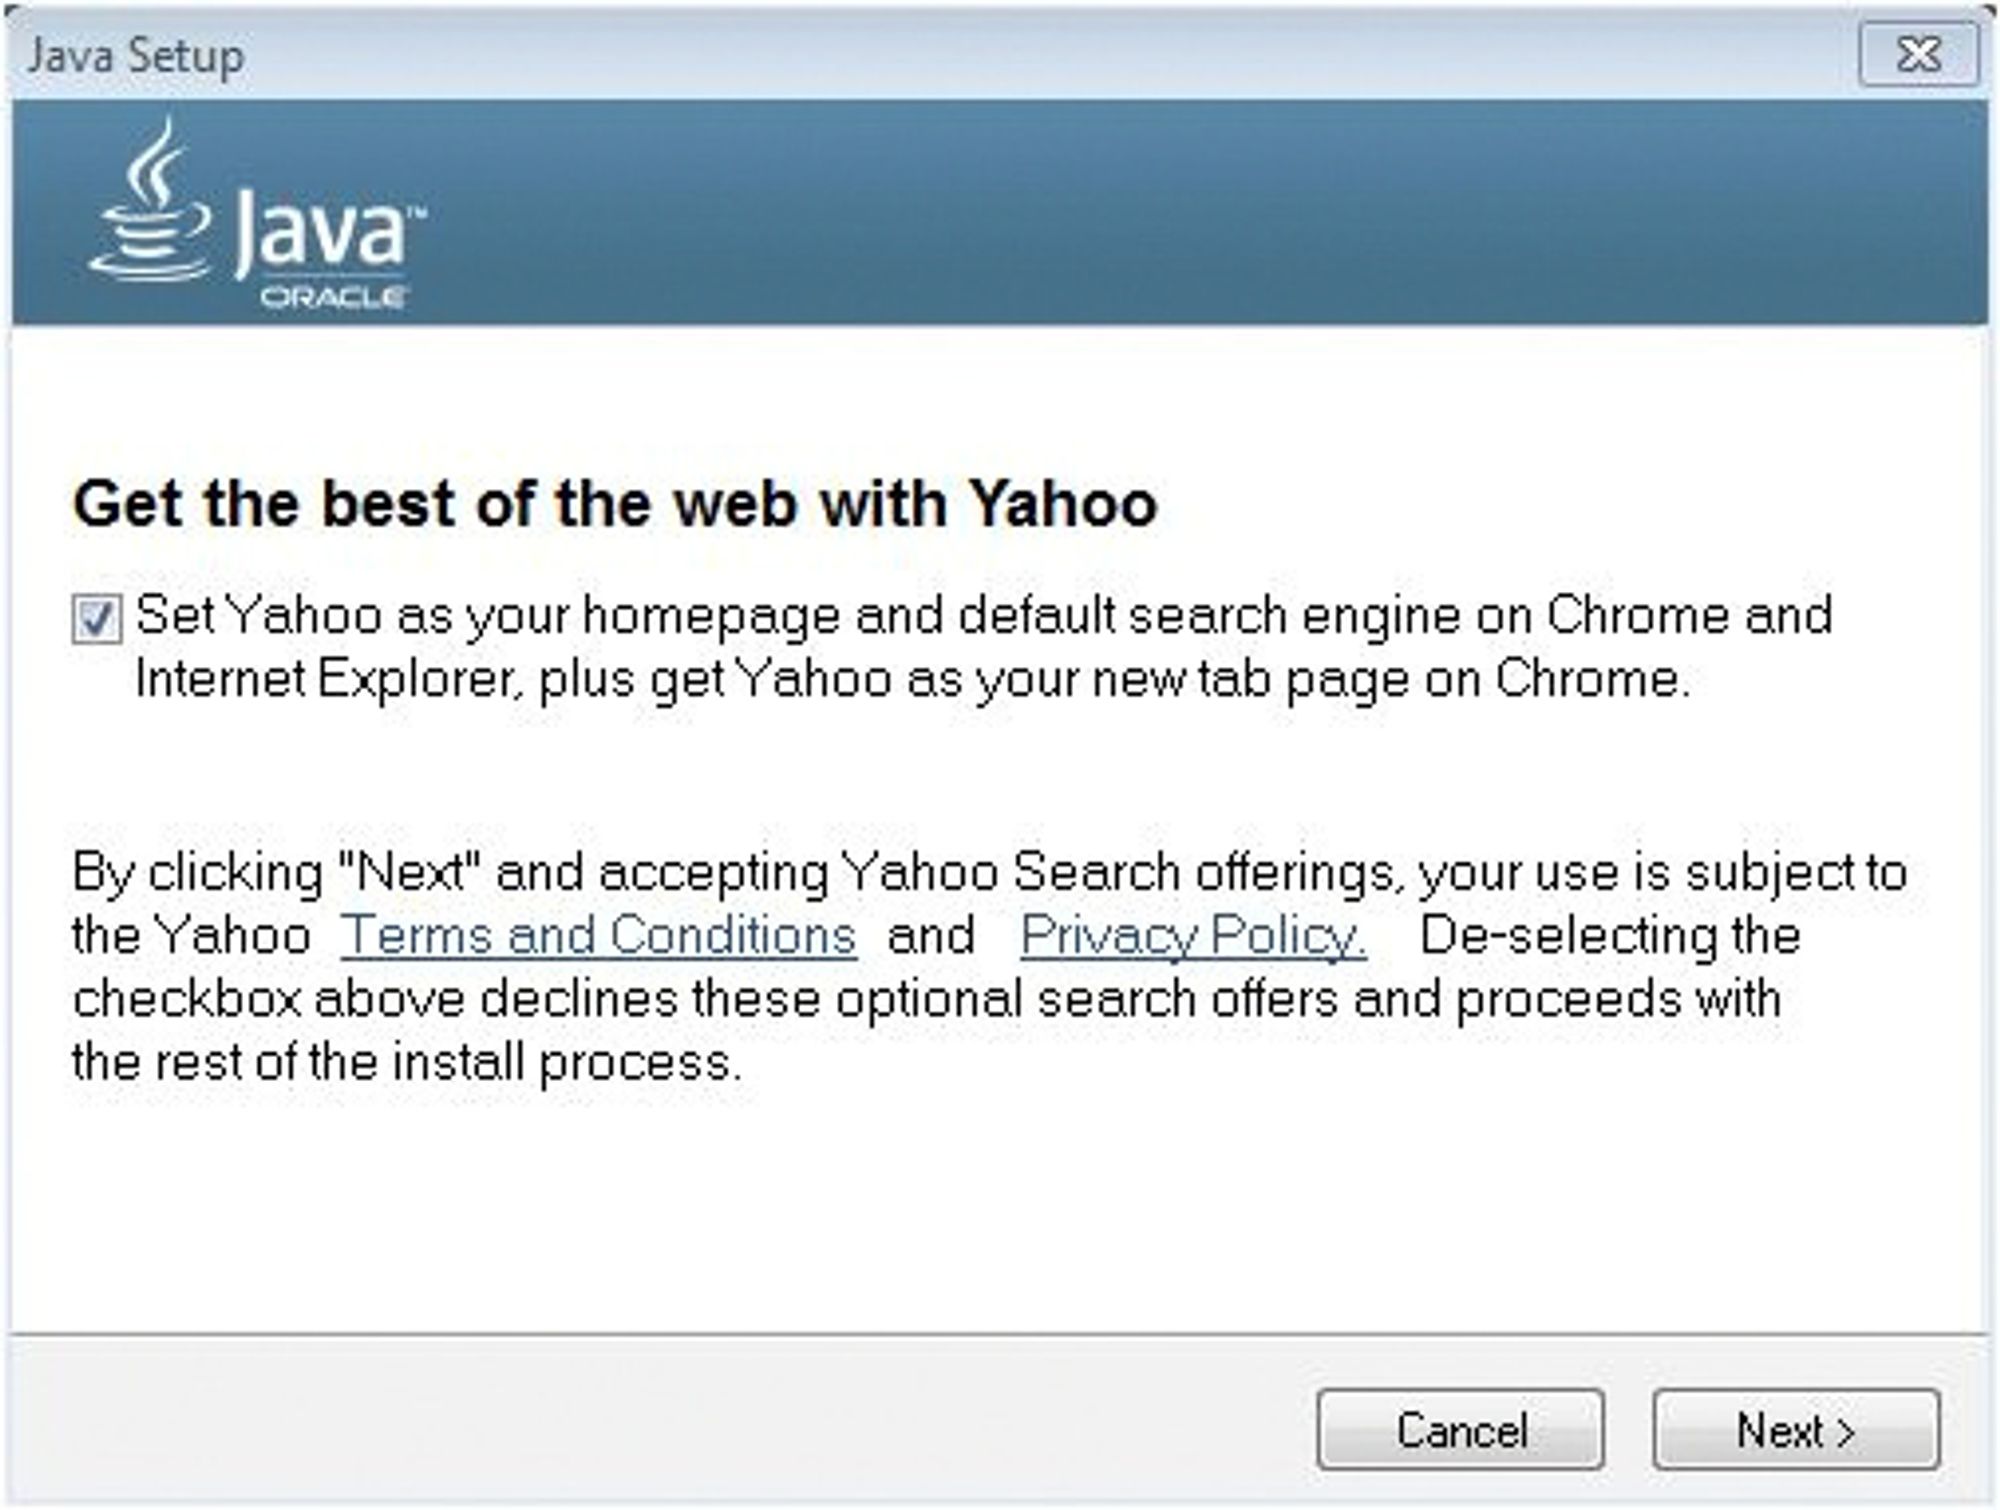 Bundling av Yahoo i Java fra Oracle